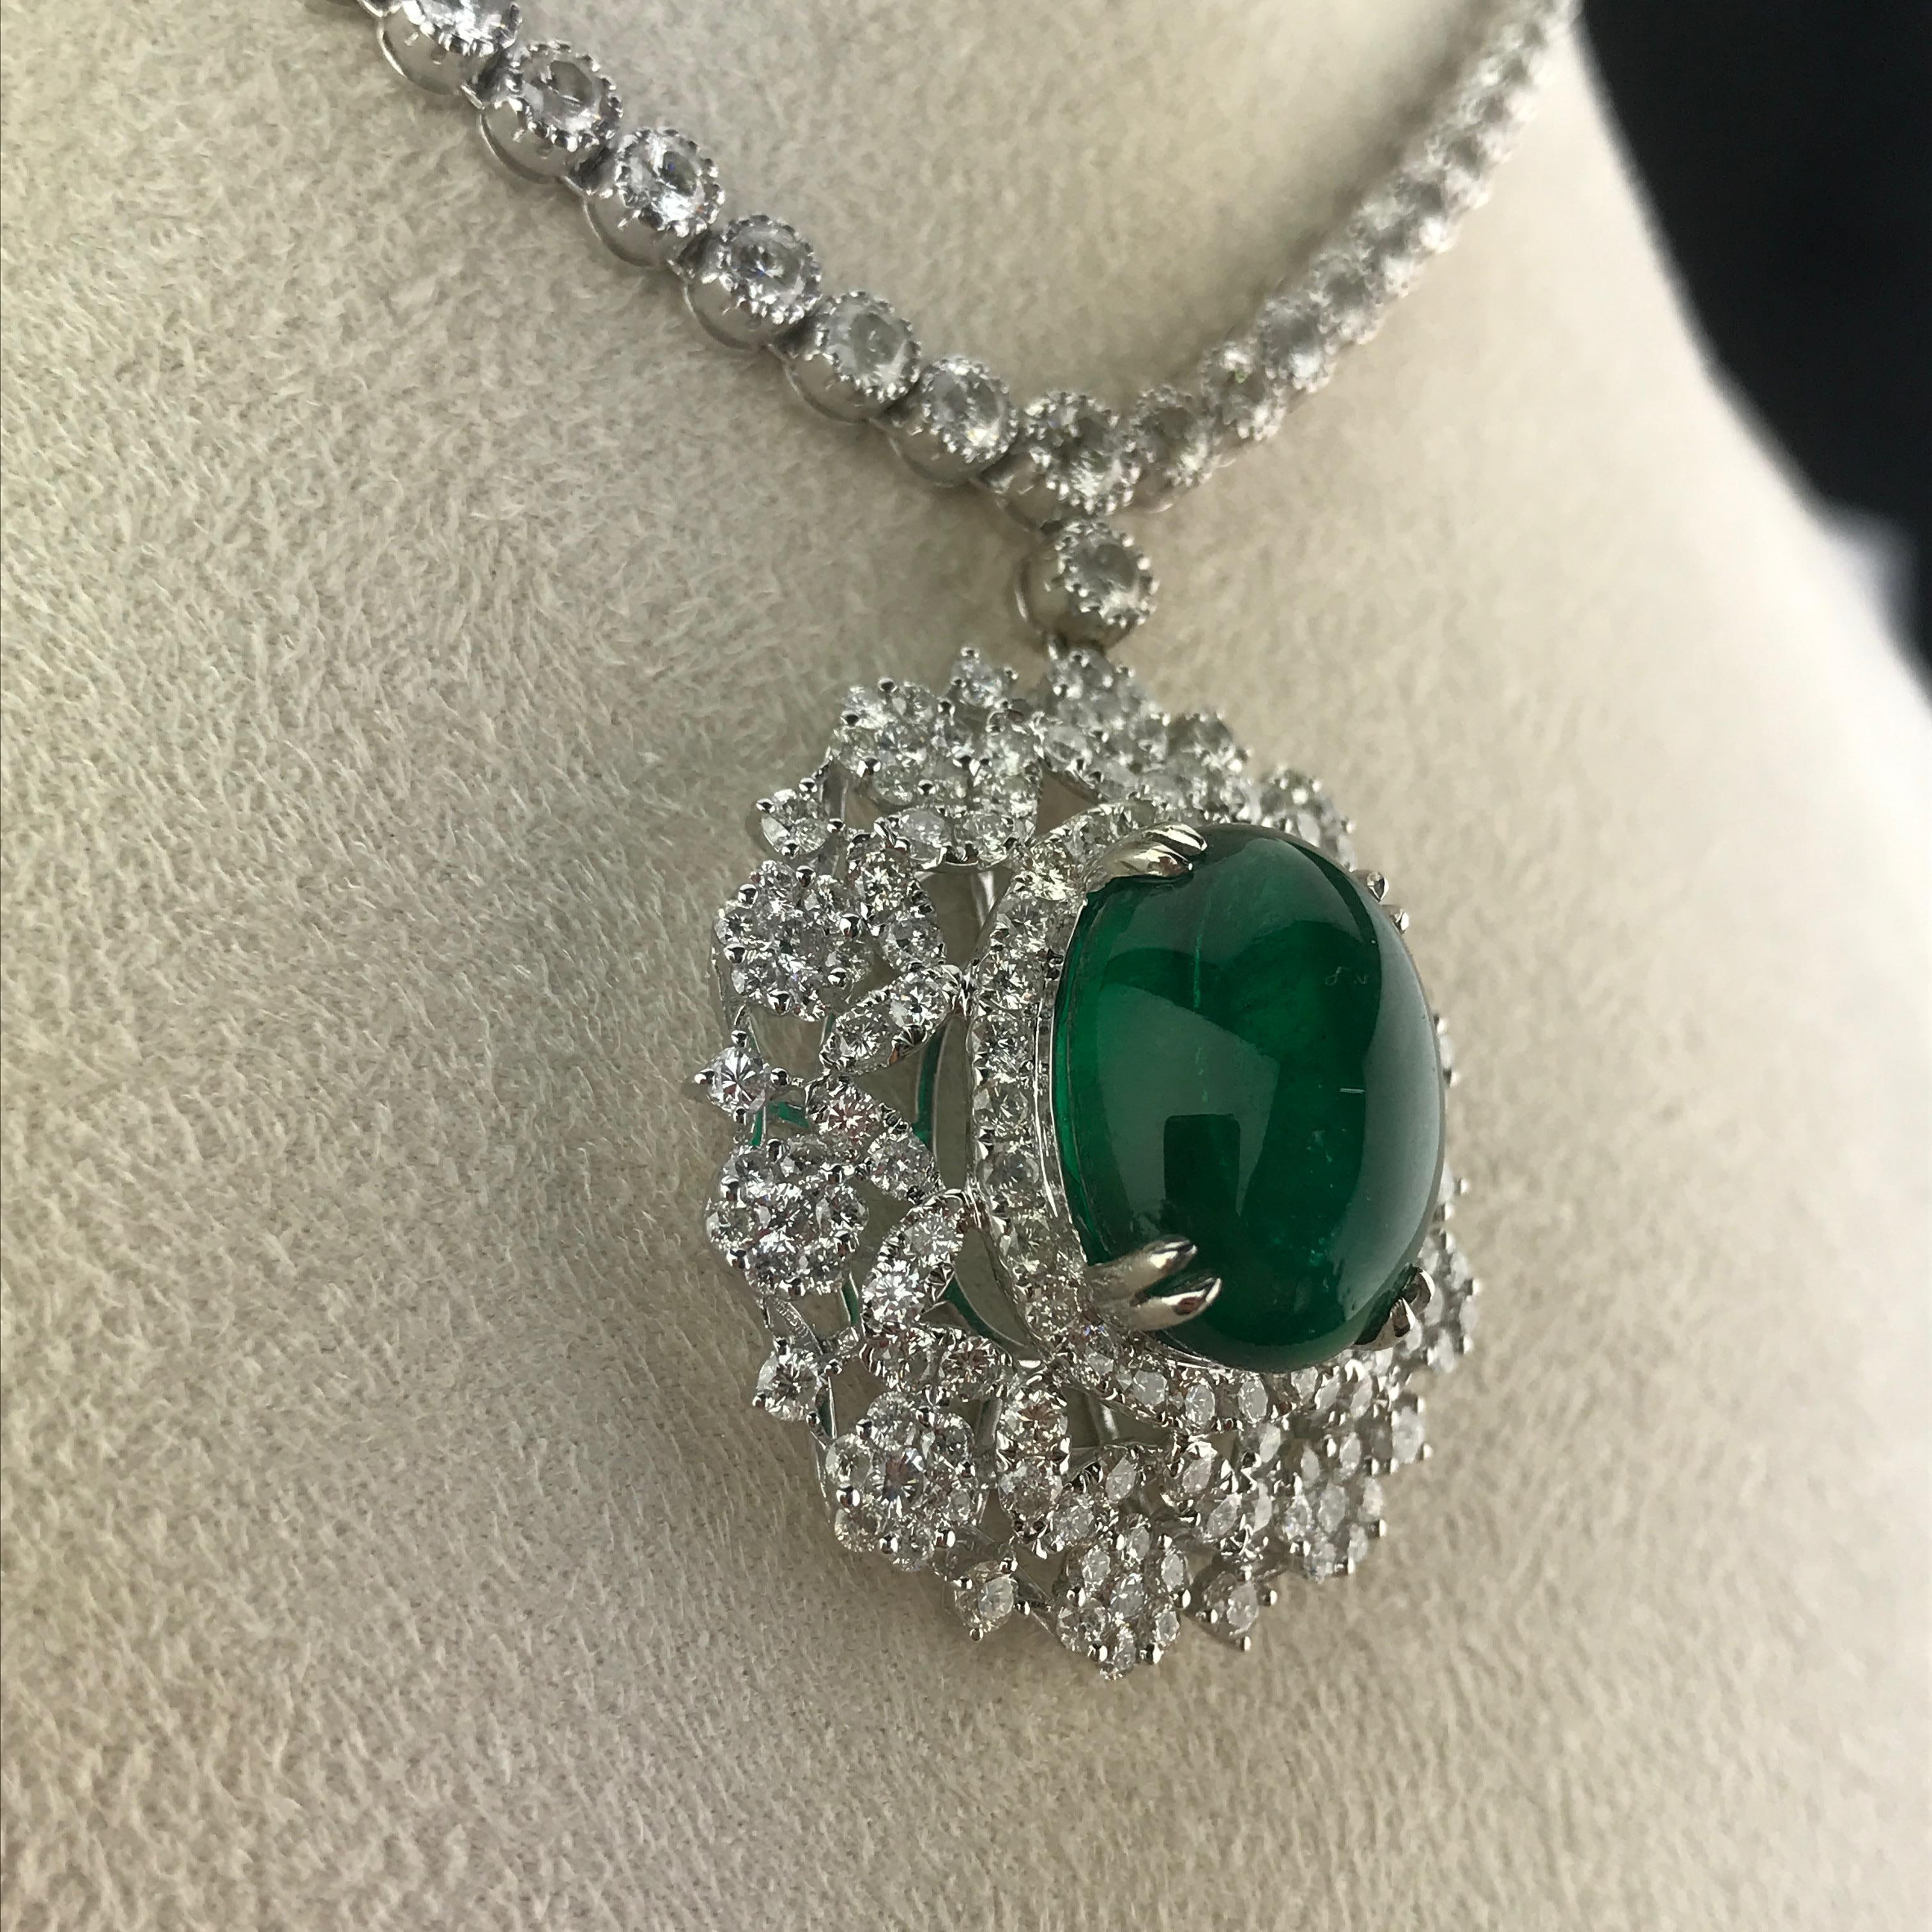 Eine besondere Halskette mit einem wunderschönen, transparenten und sauberen sambischen Smaragd von 15,03 Karat  mit weißen Diamanten umrandet, an einer Diamantkette hängend. Das gesamte Collier besteht aus über 11 Karat weißen Diamanten und ist in